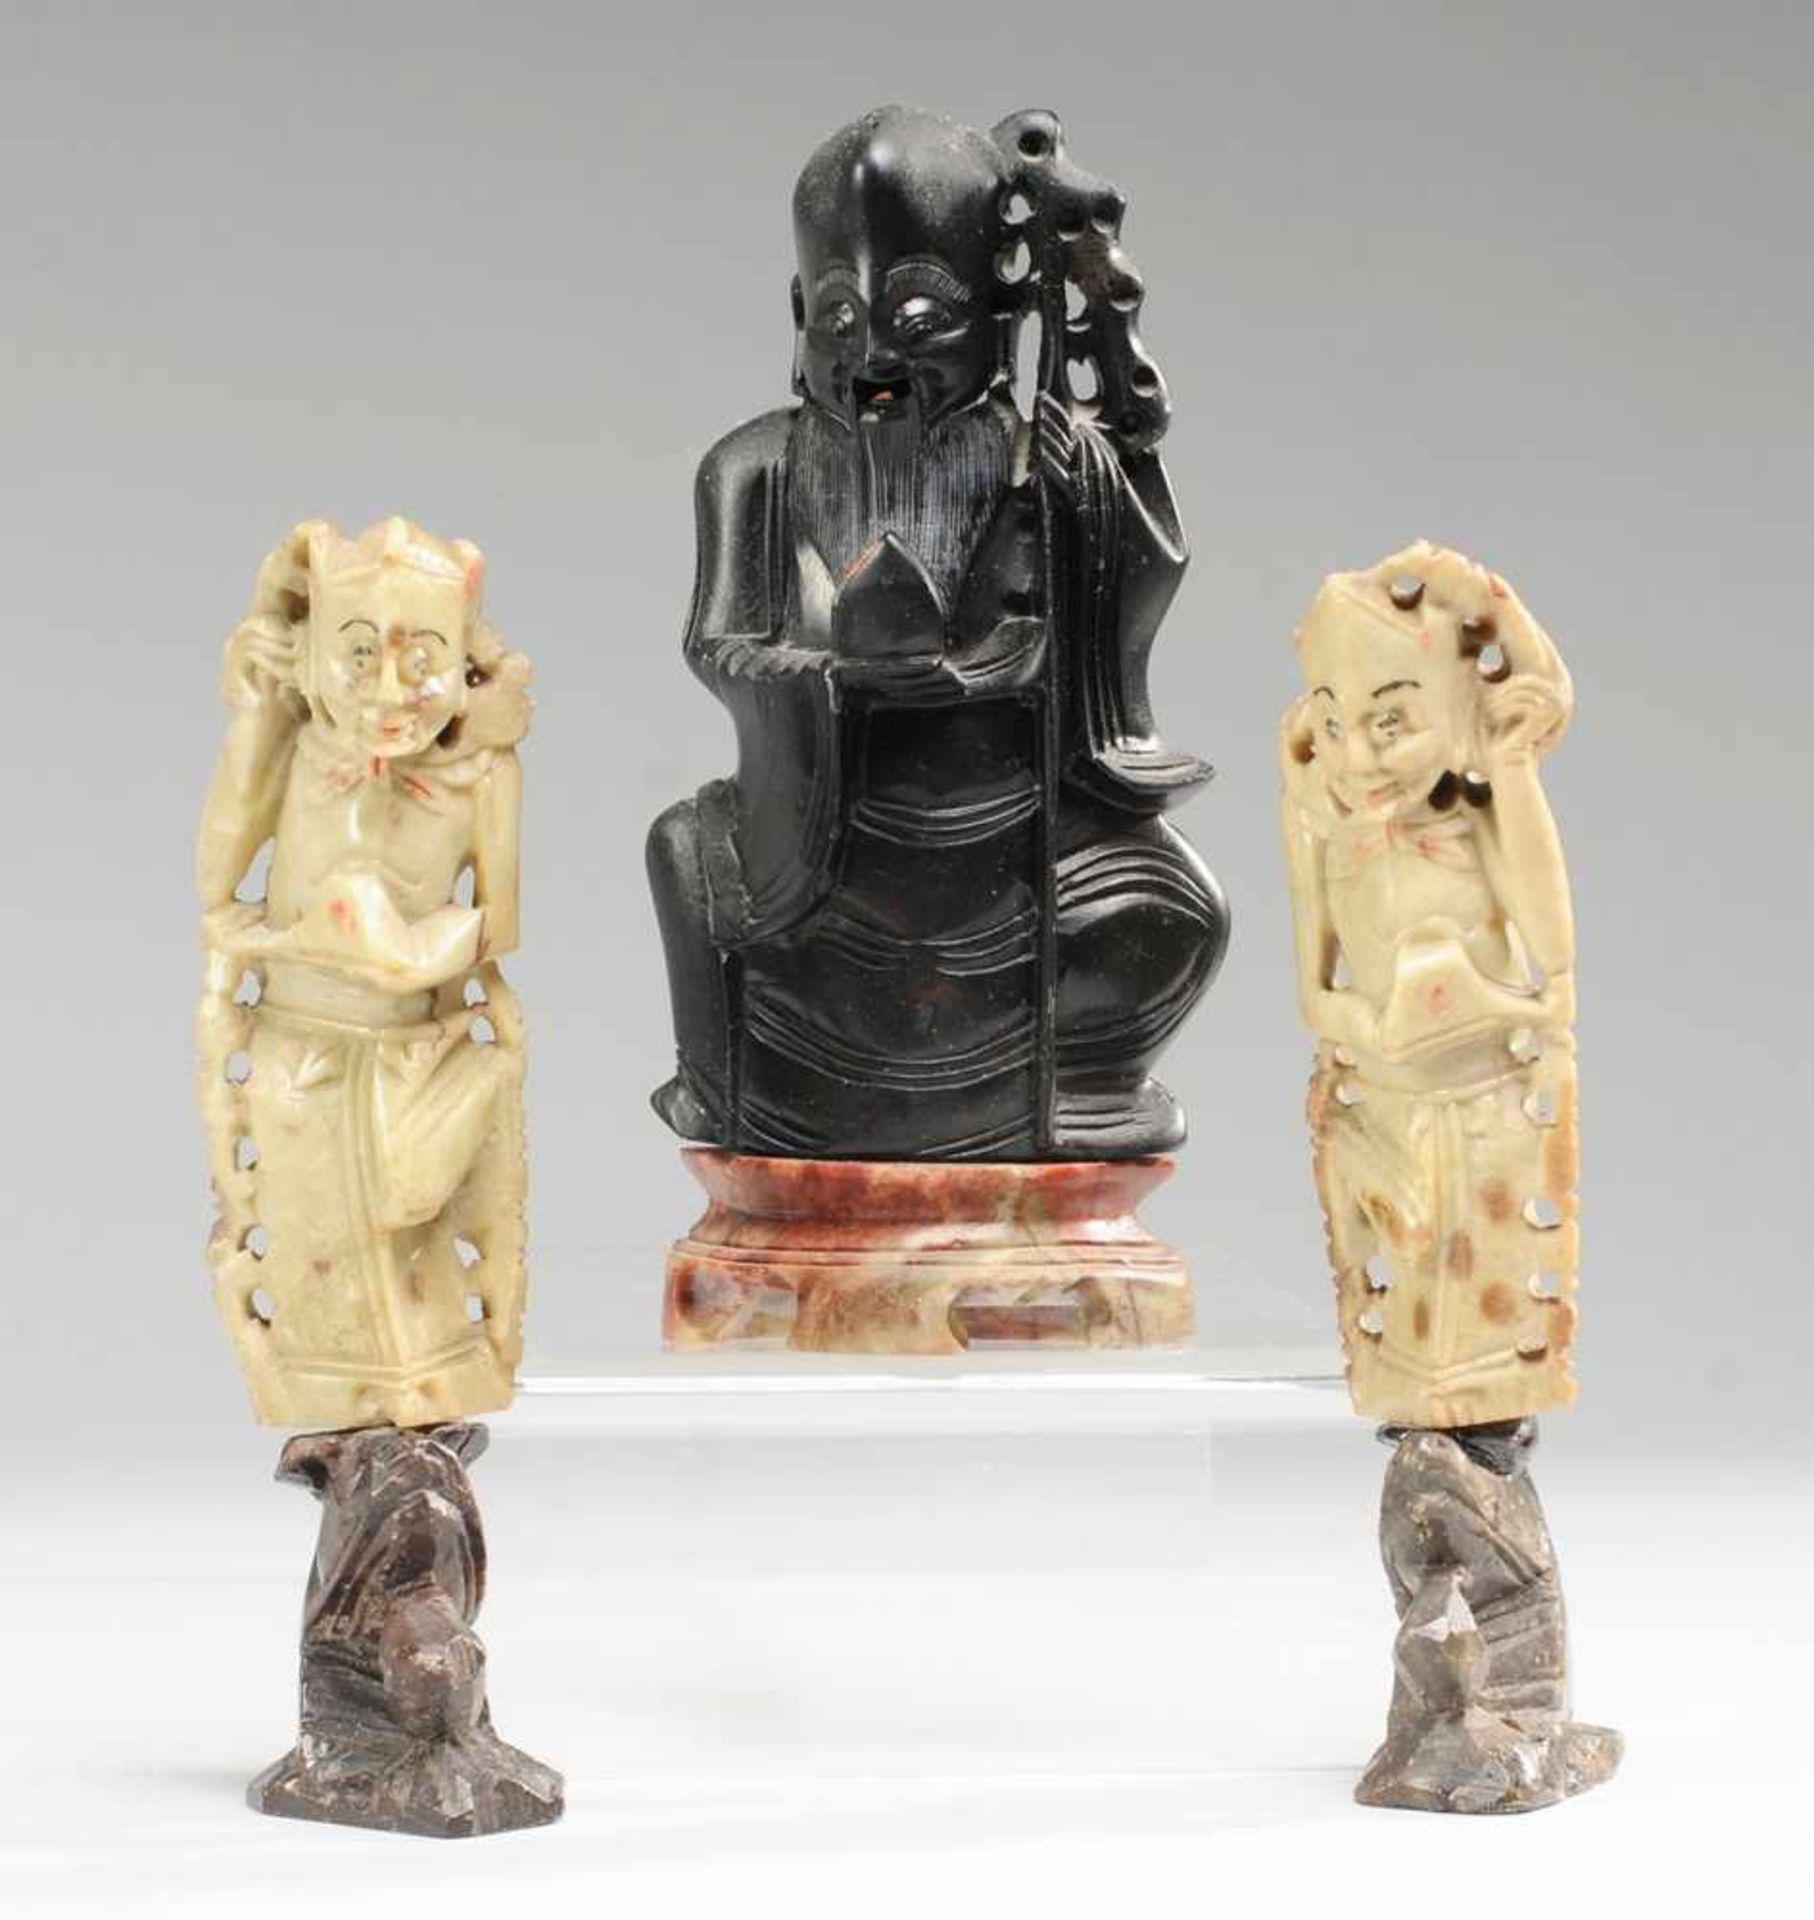 Drei Speckstein-FigurenVersch. farbiger Speckstein, geschnitzt. Auf als Drachenköpfen gestalteten